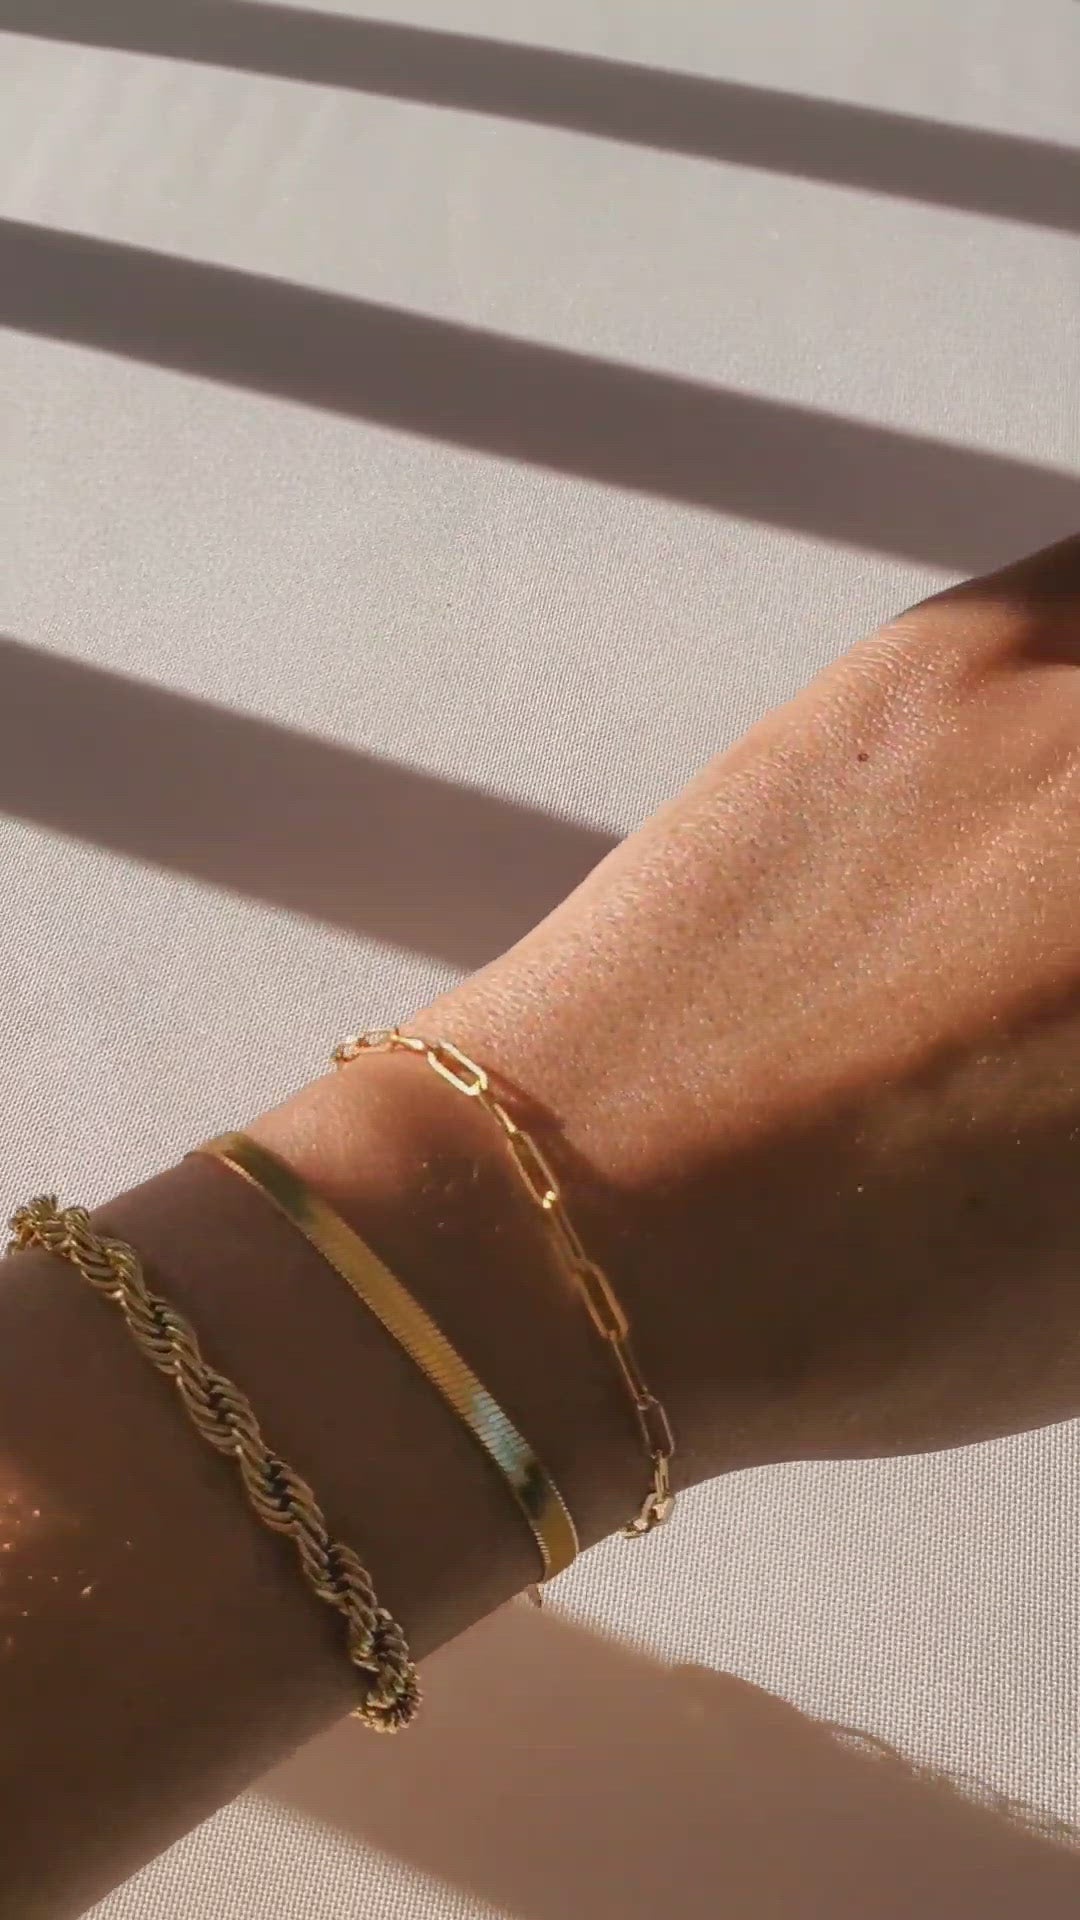 Camden Gold Rope Chain Bracelet